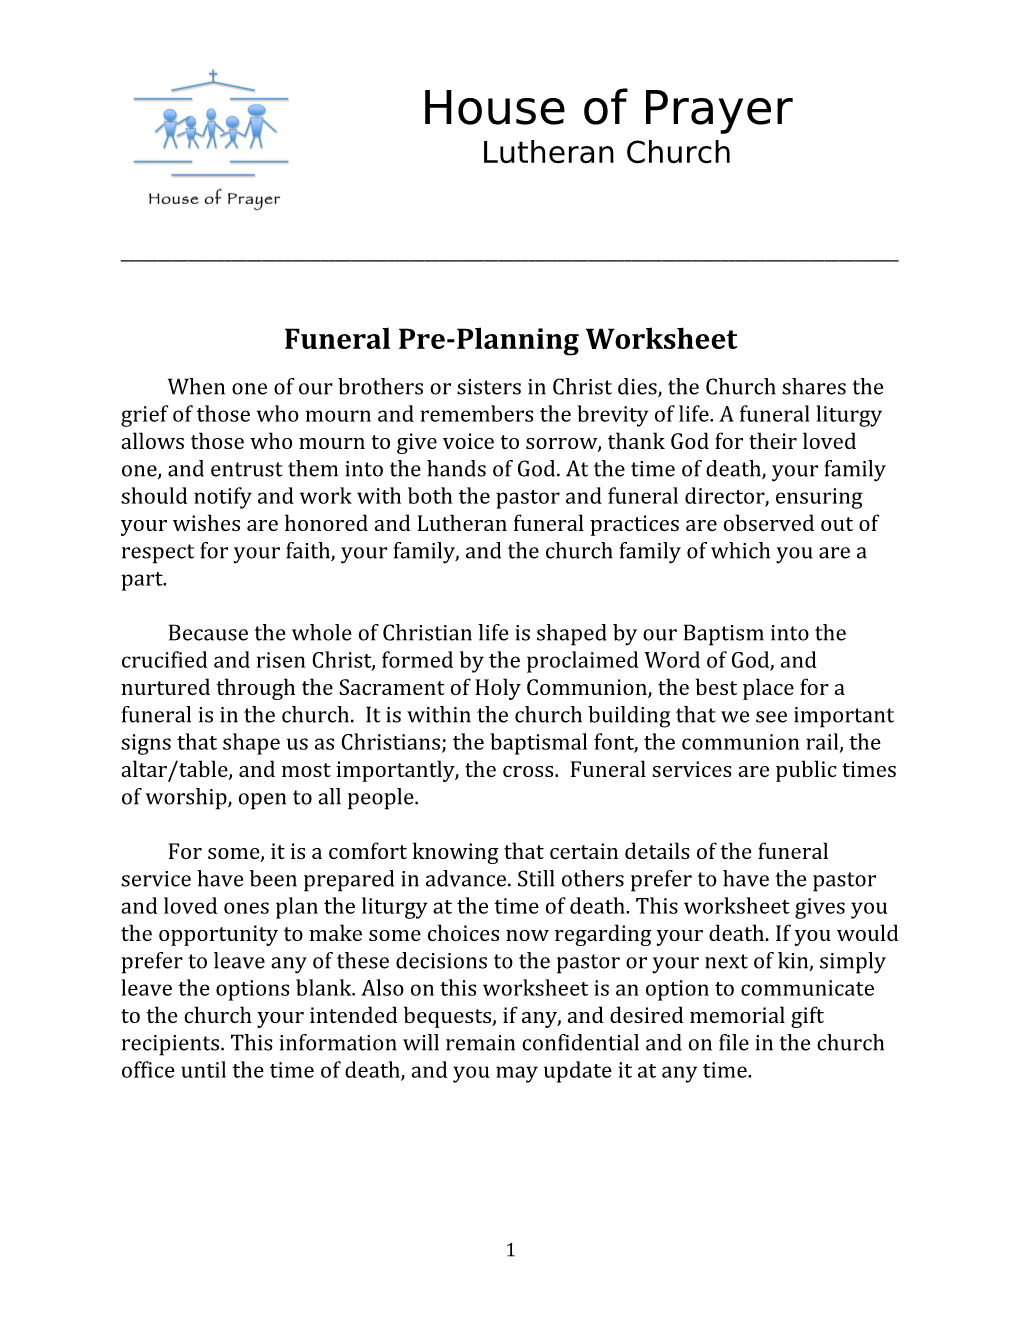 Funeral Pre-Planning Worksheet